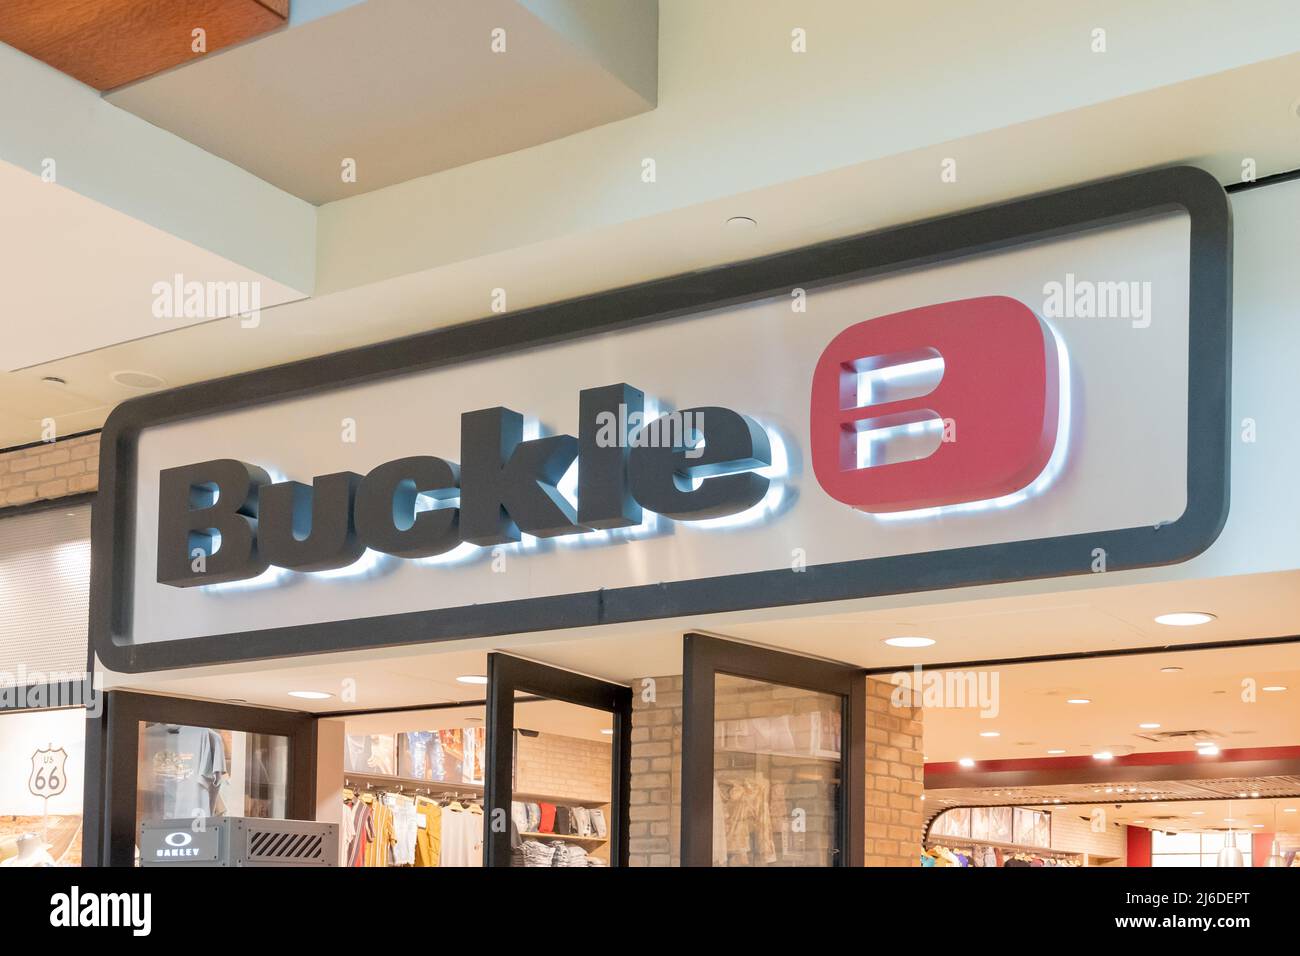 Houston, Texas, USA - 25. Februar 2022: Nahaufnahme des Buckle-Ladenzeichens in einem Einkaufszentrum. Stockfoto